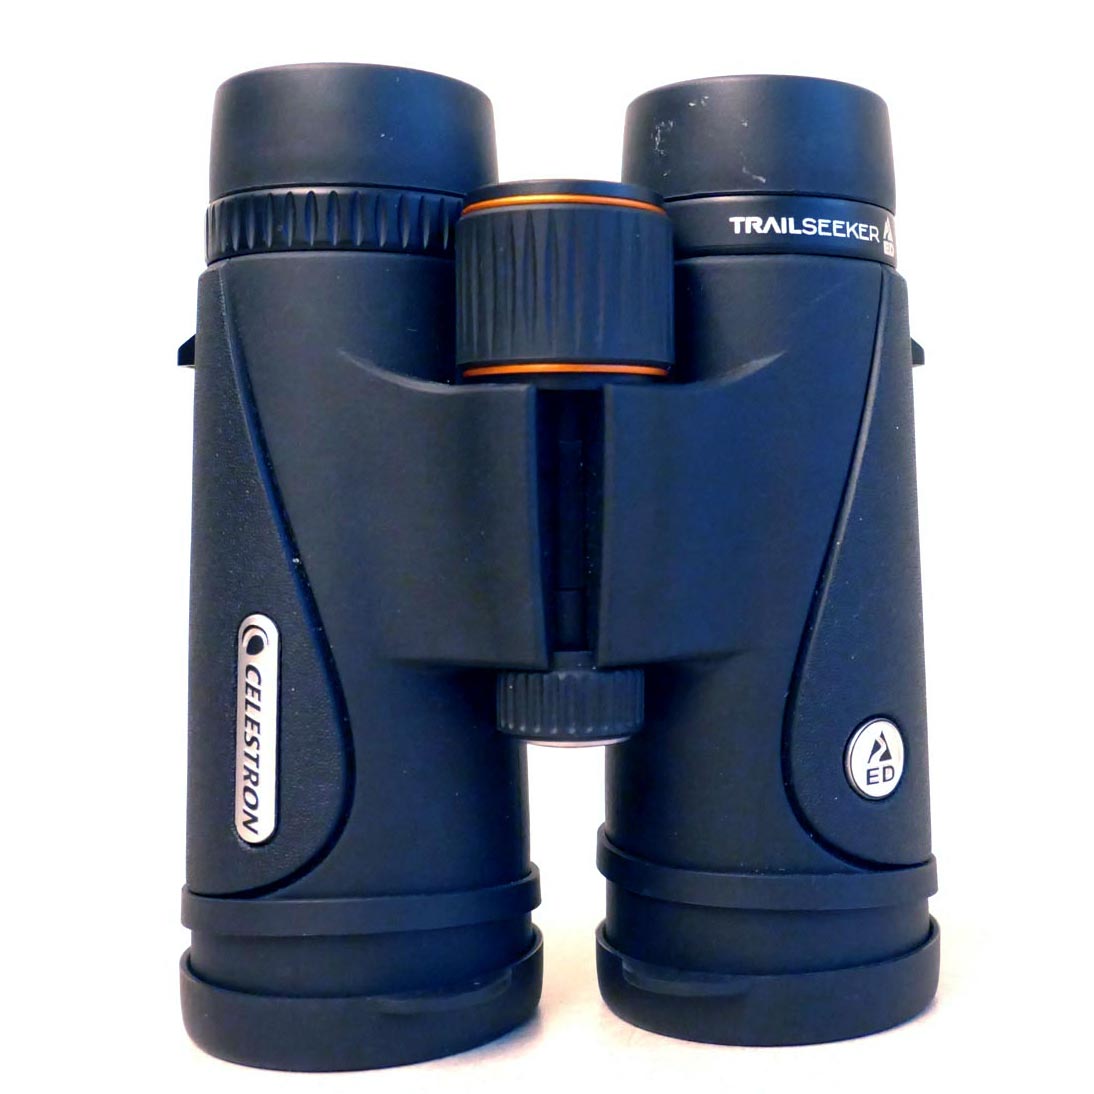 Celestron TrailSeeker 8x42 binoculars.